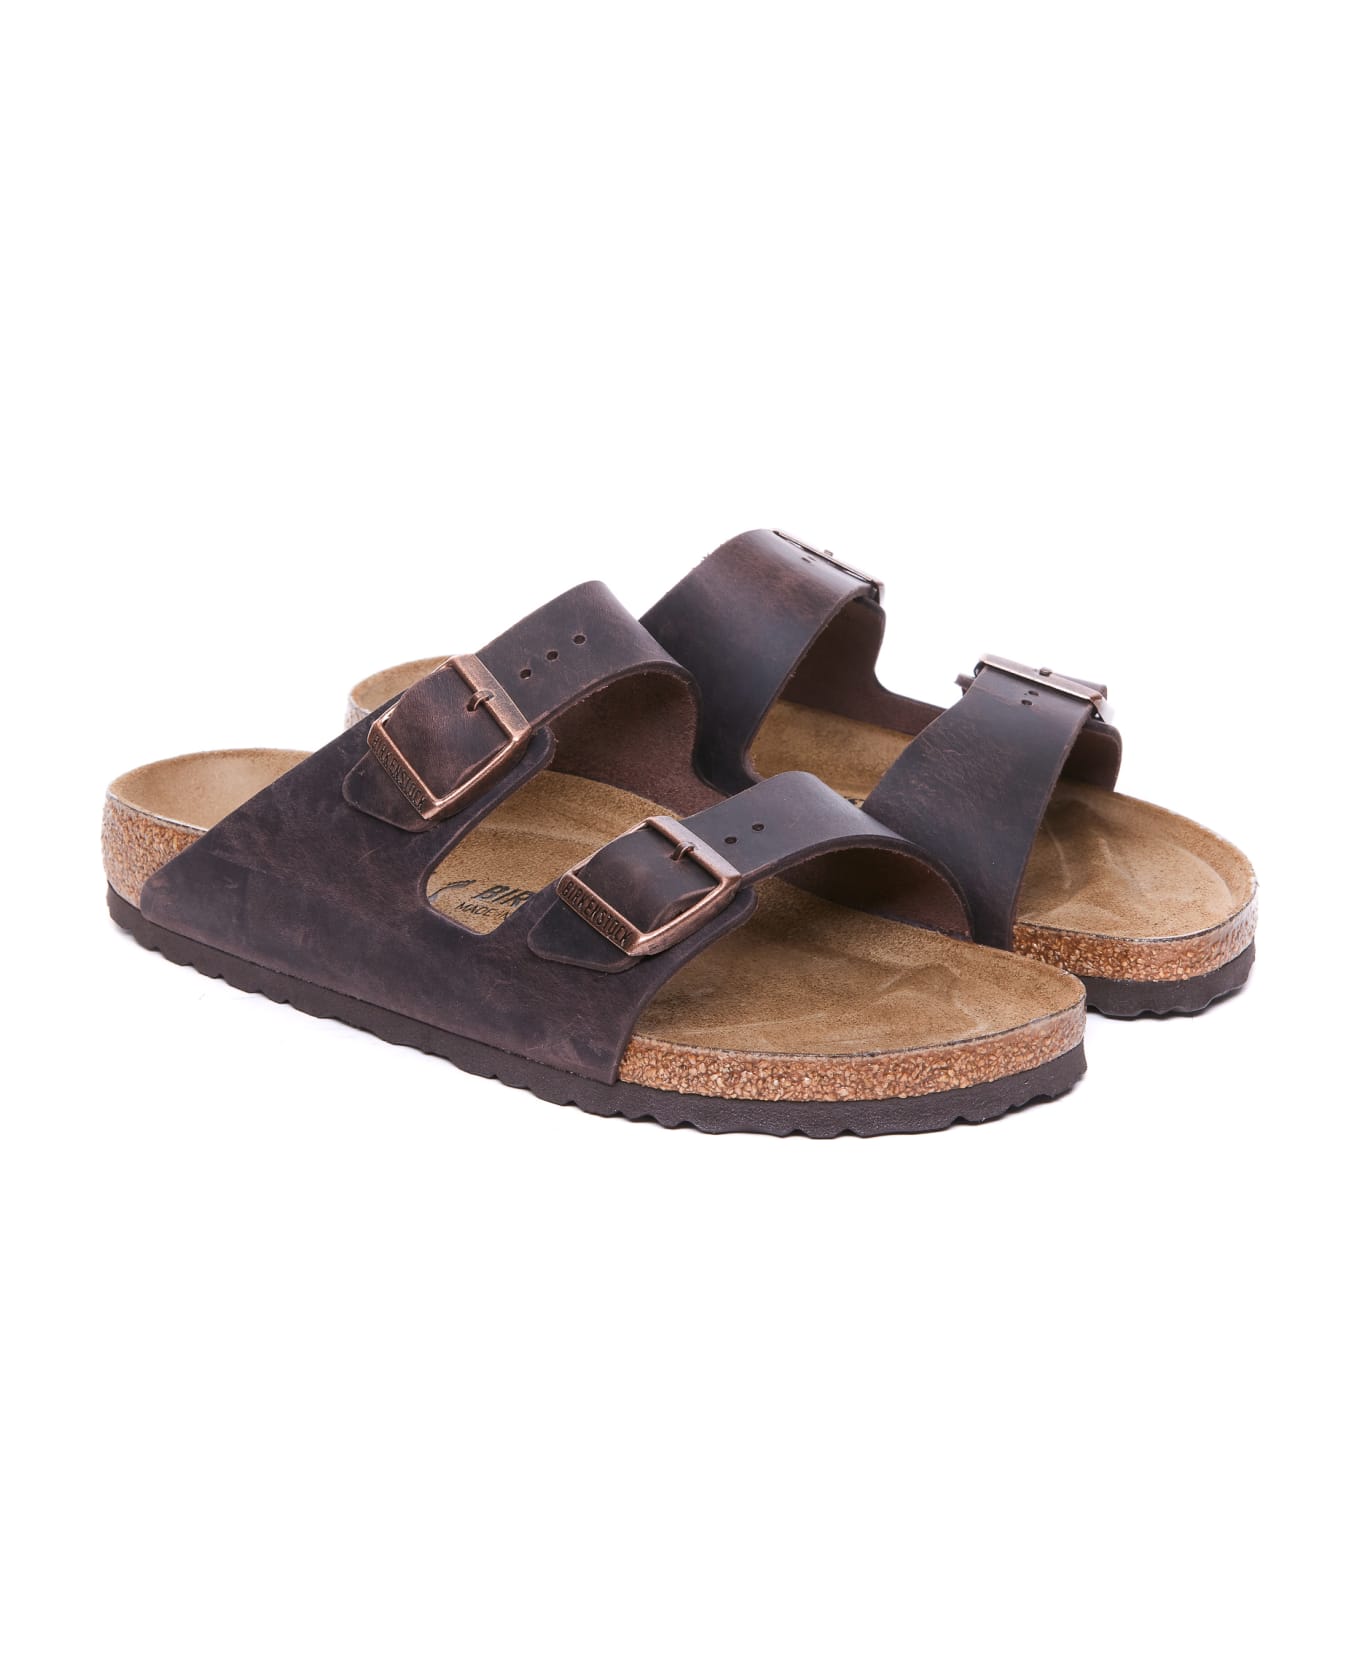 Birkenstock Habana Sandals - Brown